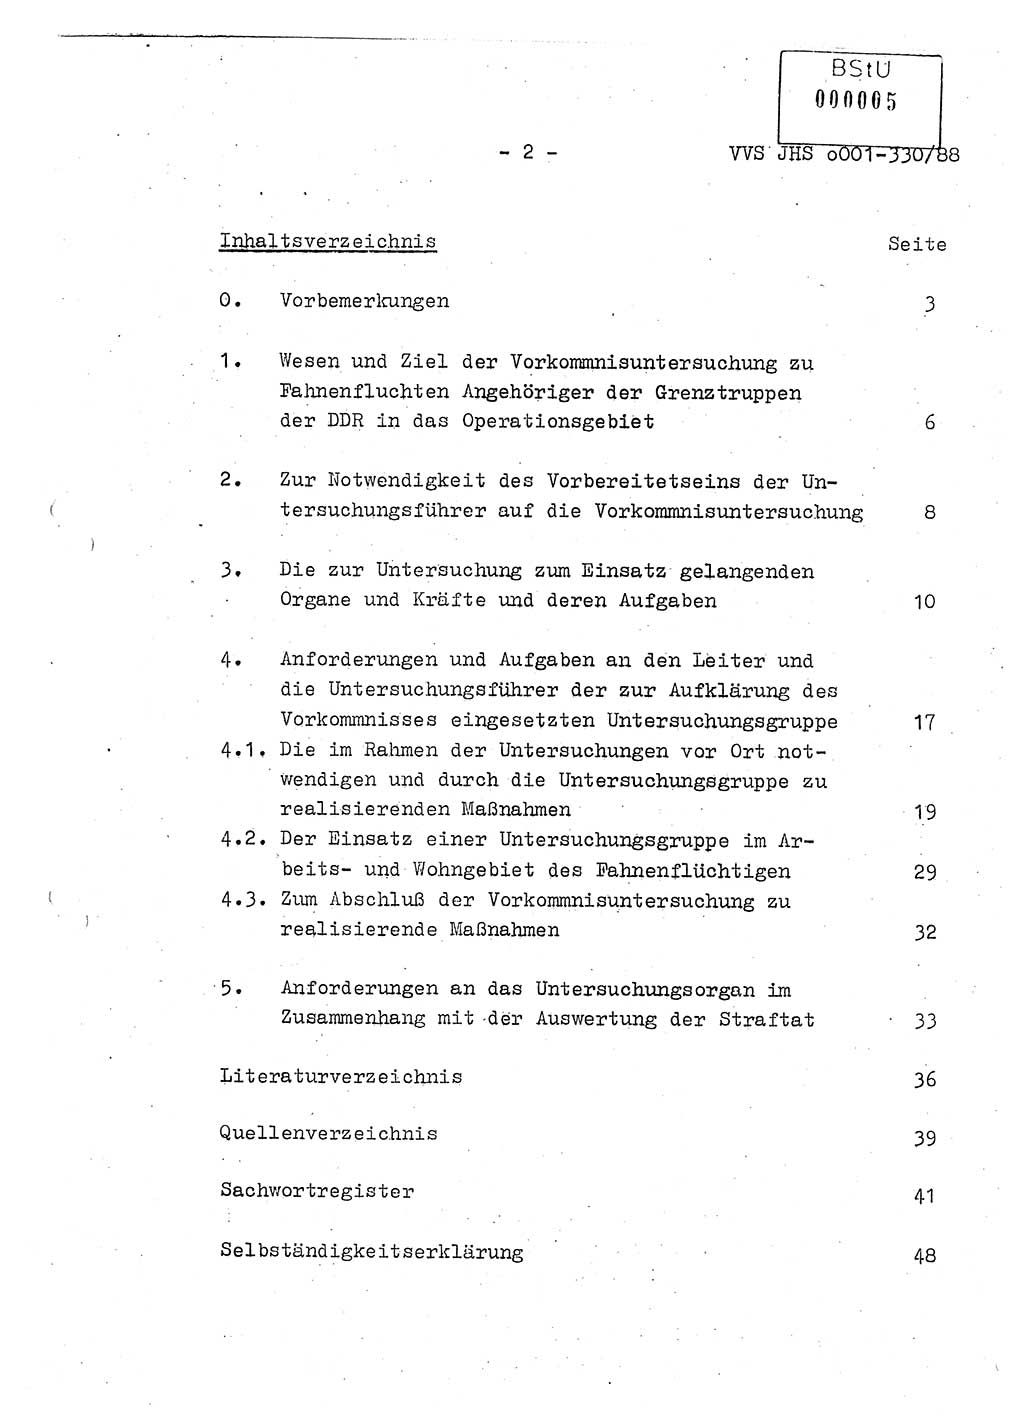 Diplomarbeit Offiziersschüler Thomas Mühle (HA Ⅸ/6), Ministerium für Staatssicherheit (MfS) [Deutsche Demokratische Republik (DDR)], Juristische Hochschule (JHS), Vertrauliche Verschlußsache (VVS) o001-330/88, Potsdam 1988, Seite 2 (Dipl.-Arb. MfS DDR JHS VVS o001-330/88 1988, S. 2)